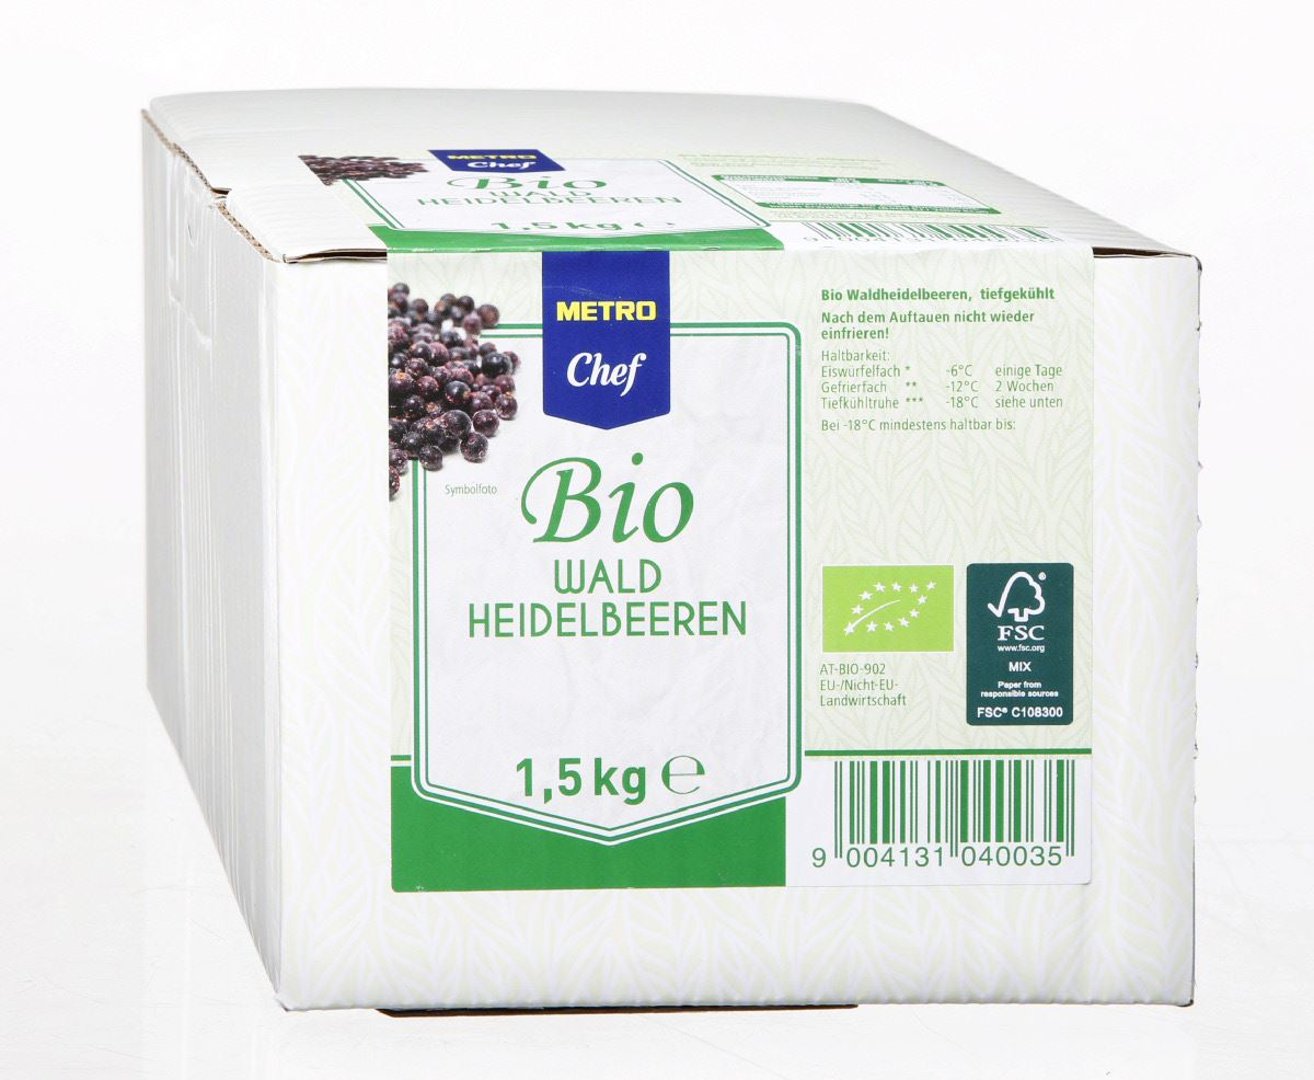 METRO Chef Bio - Waldheidelbeeren tiefgefroren - 1,5 kg Packung